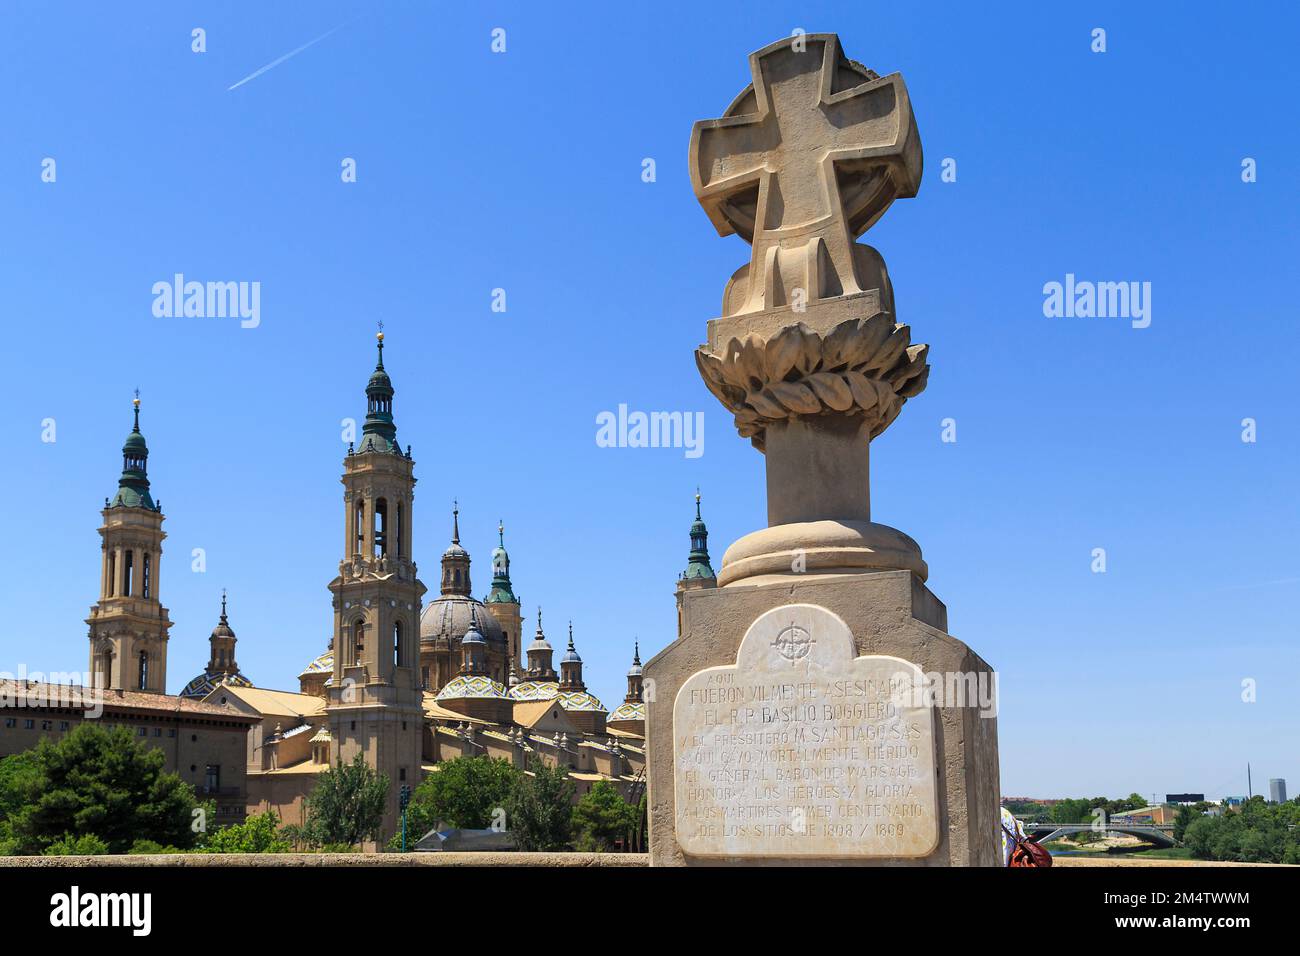 SARAGOSSA, SPANIEN - 26. MAI 2017: Dies ist das Kreuz zum Gedenken an diejenigen, die während des Unabhängigkeitskriegs getötet wurden, und die Basilika von Nuestra Senora. Stockfoto